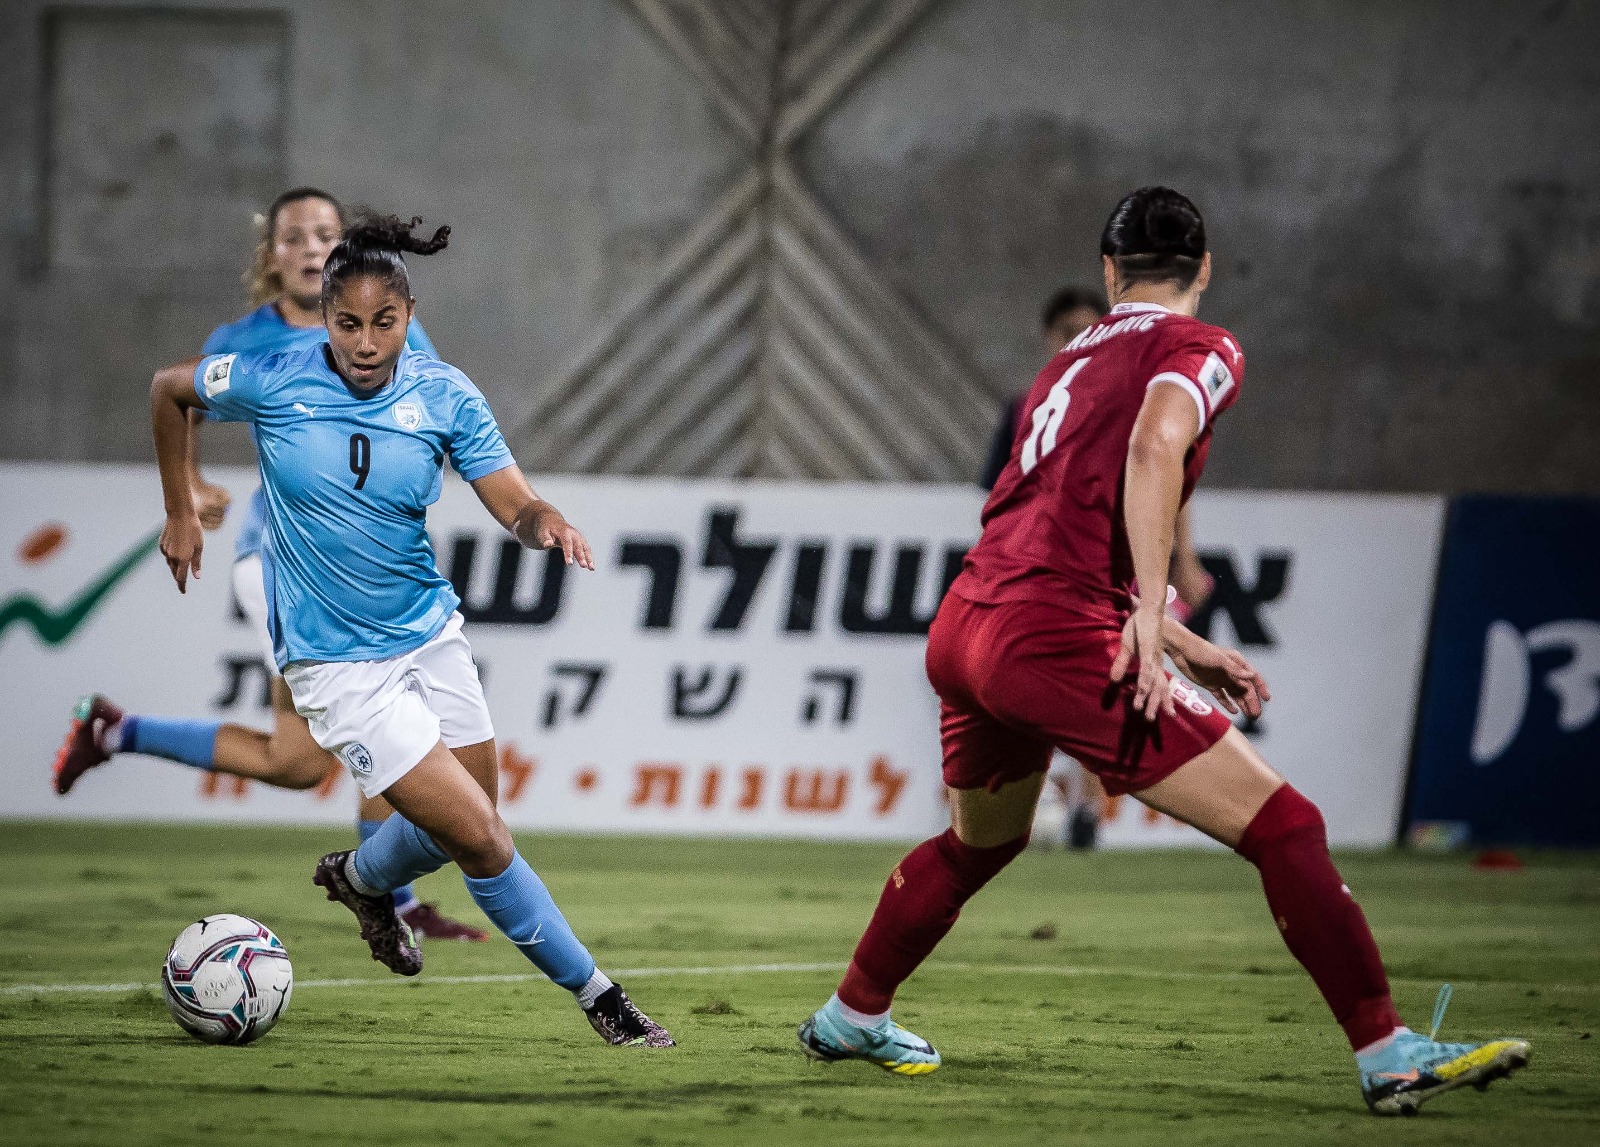 קורל חזן במדי נבחרת הנשים של ישראל בכדורגל מול סרביה במוקדמות המונדיאל (צילום: עודד קרני, באדיבות ההתאחדות לכדורגל בישראל)